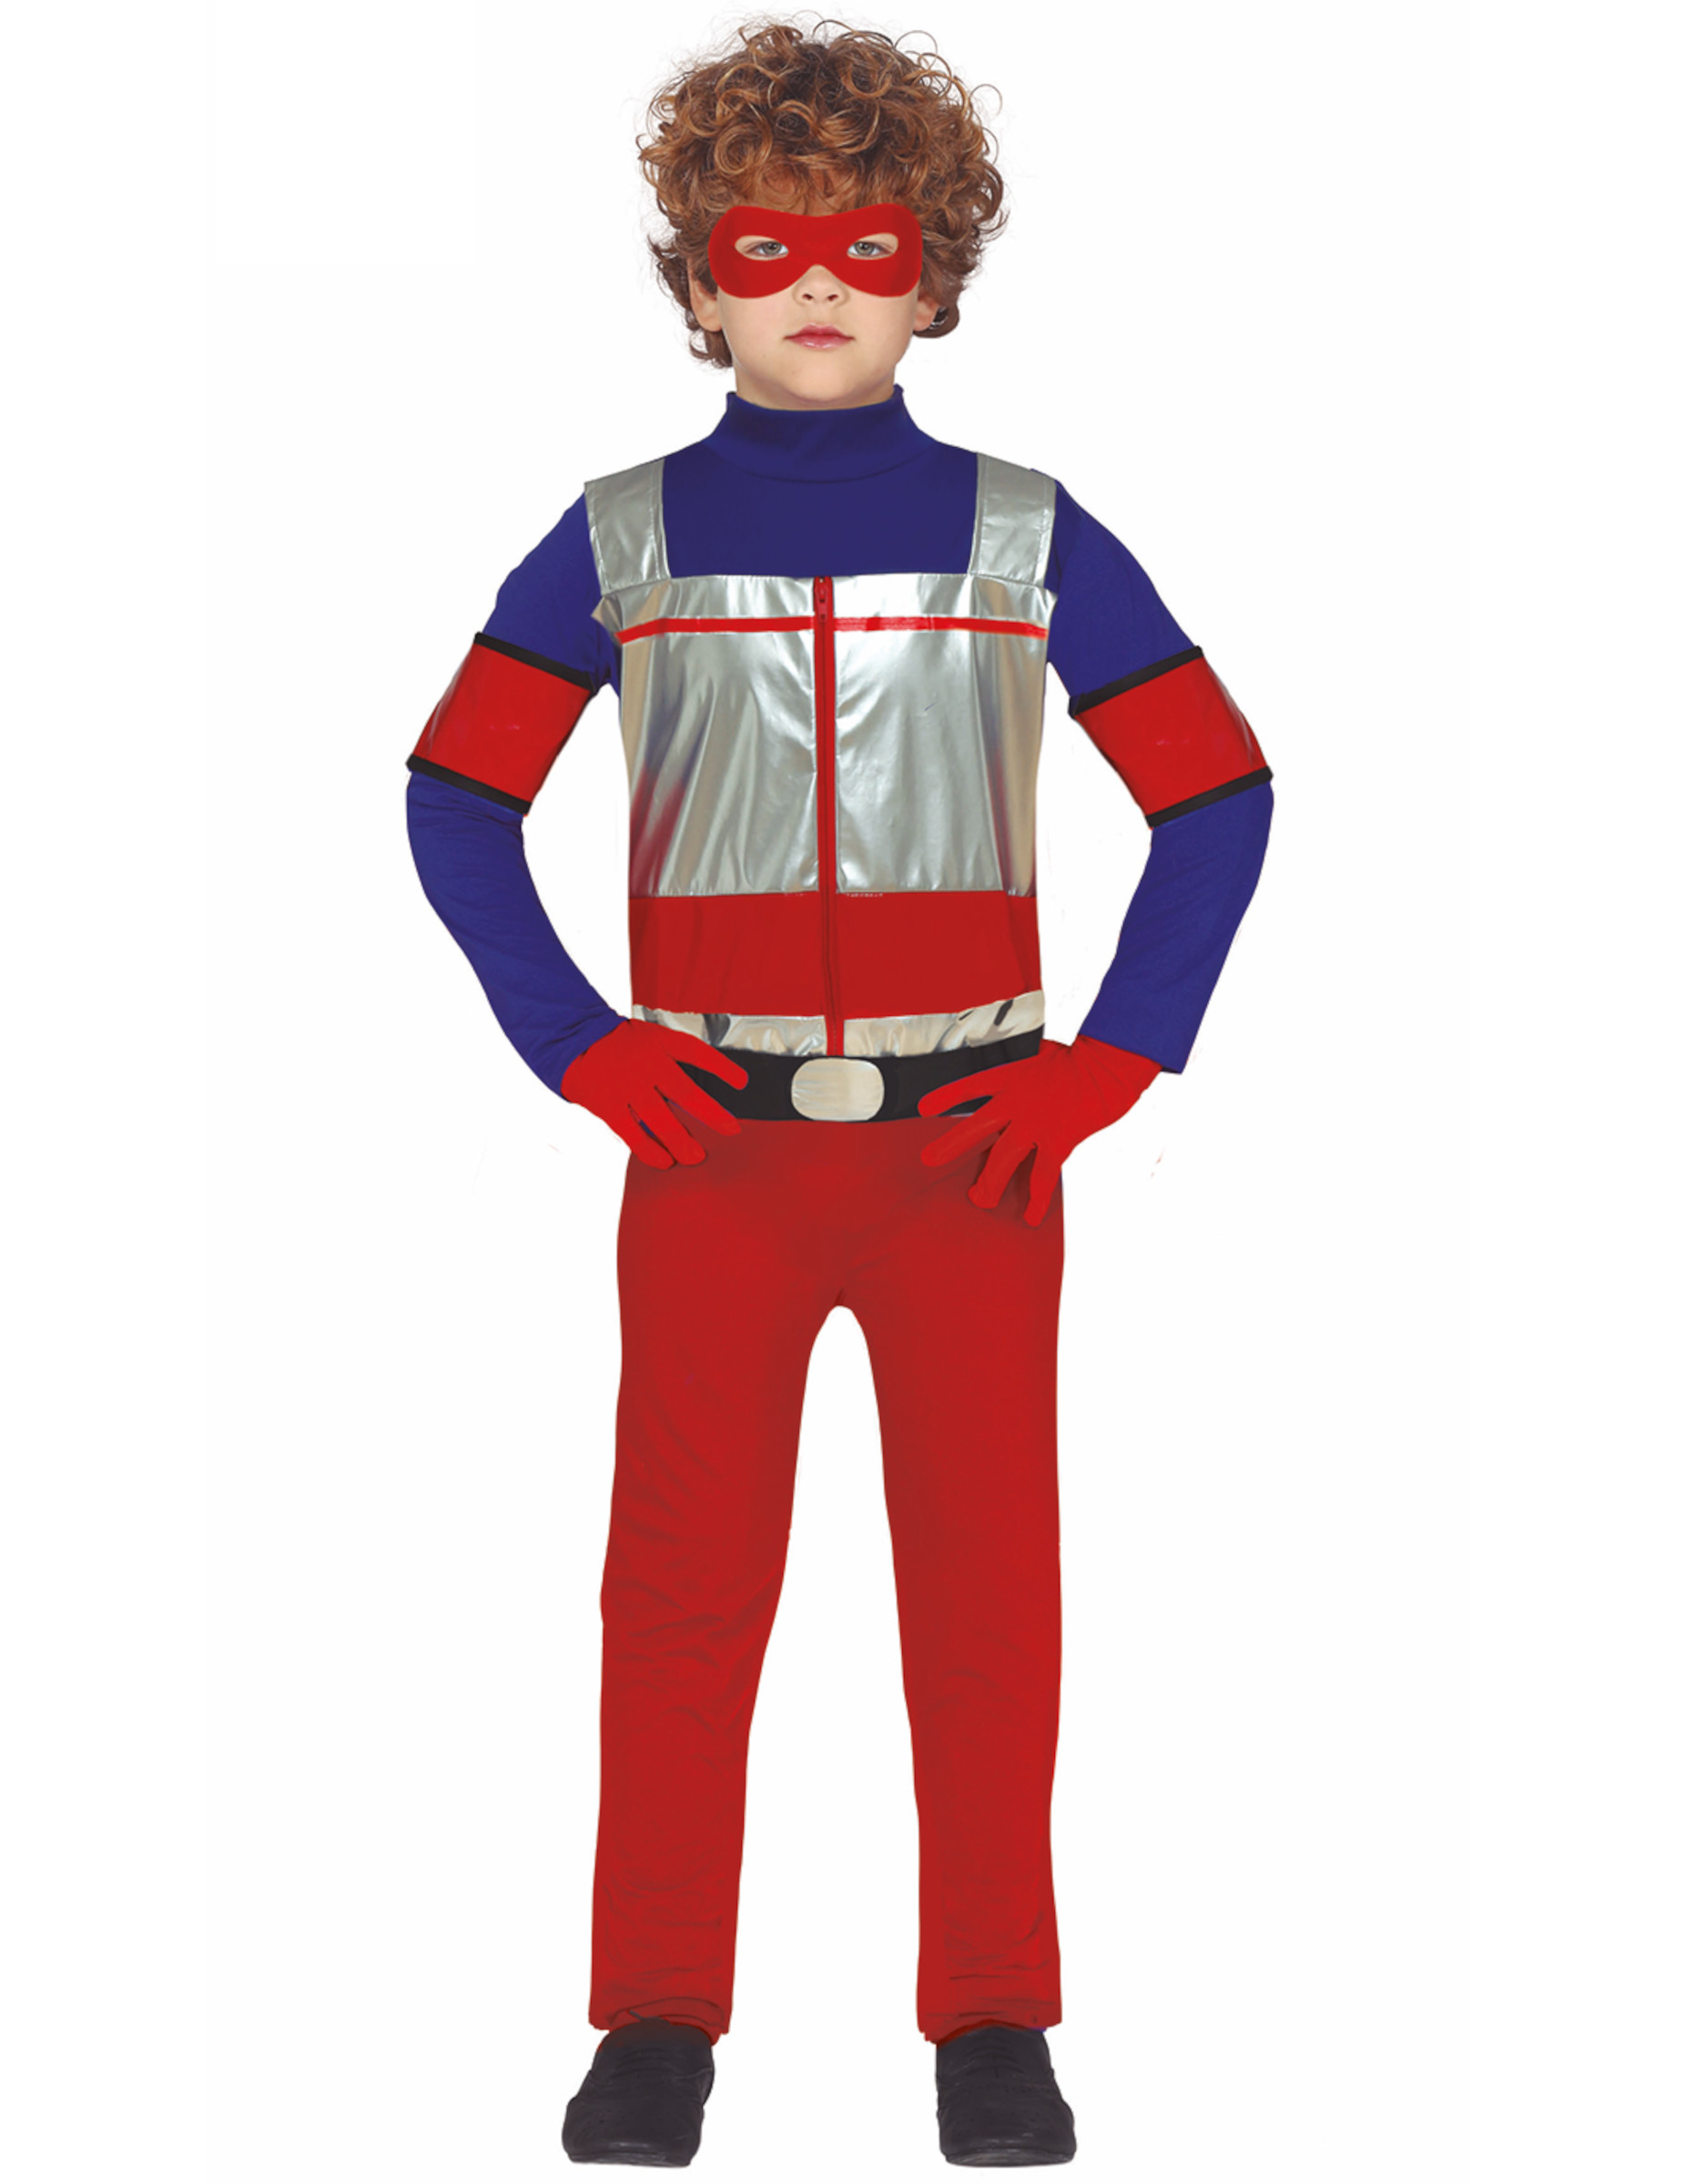 Cooles Superhelden-Kinderkostüm TV-Held silberfarben-rot-blau von FIESTAS GUIRCA, S.L.